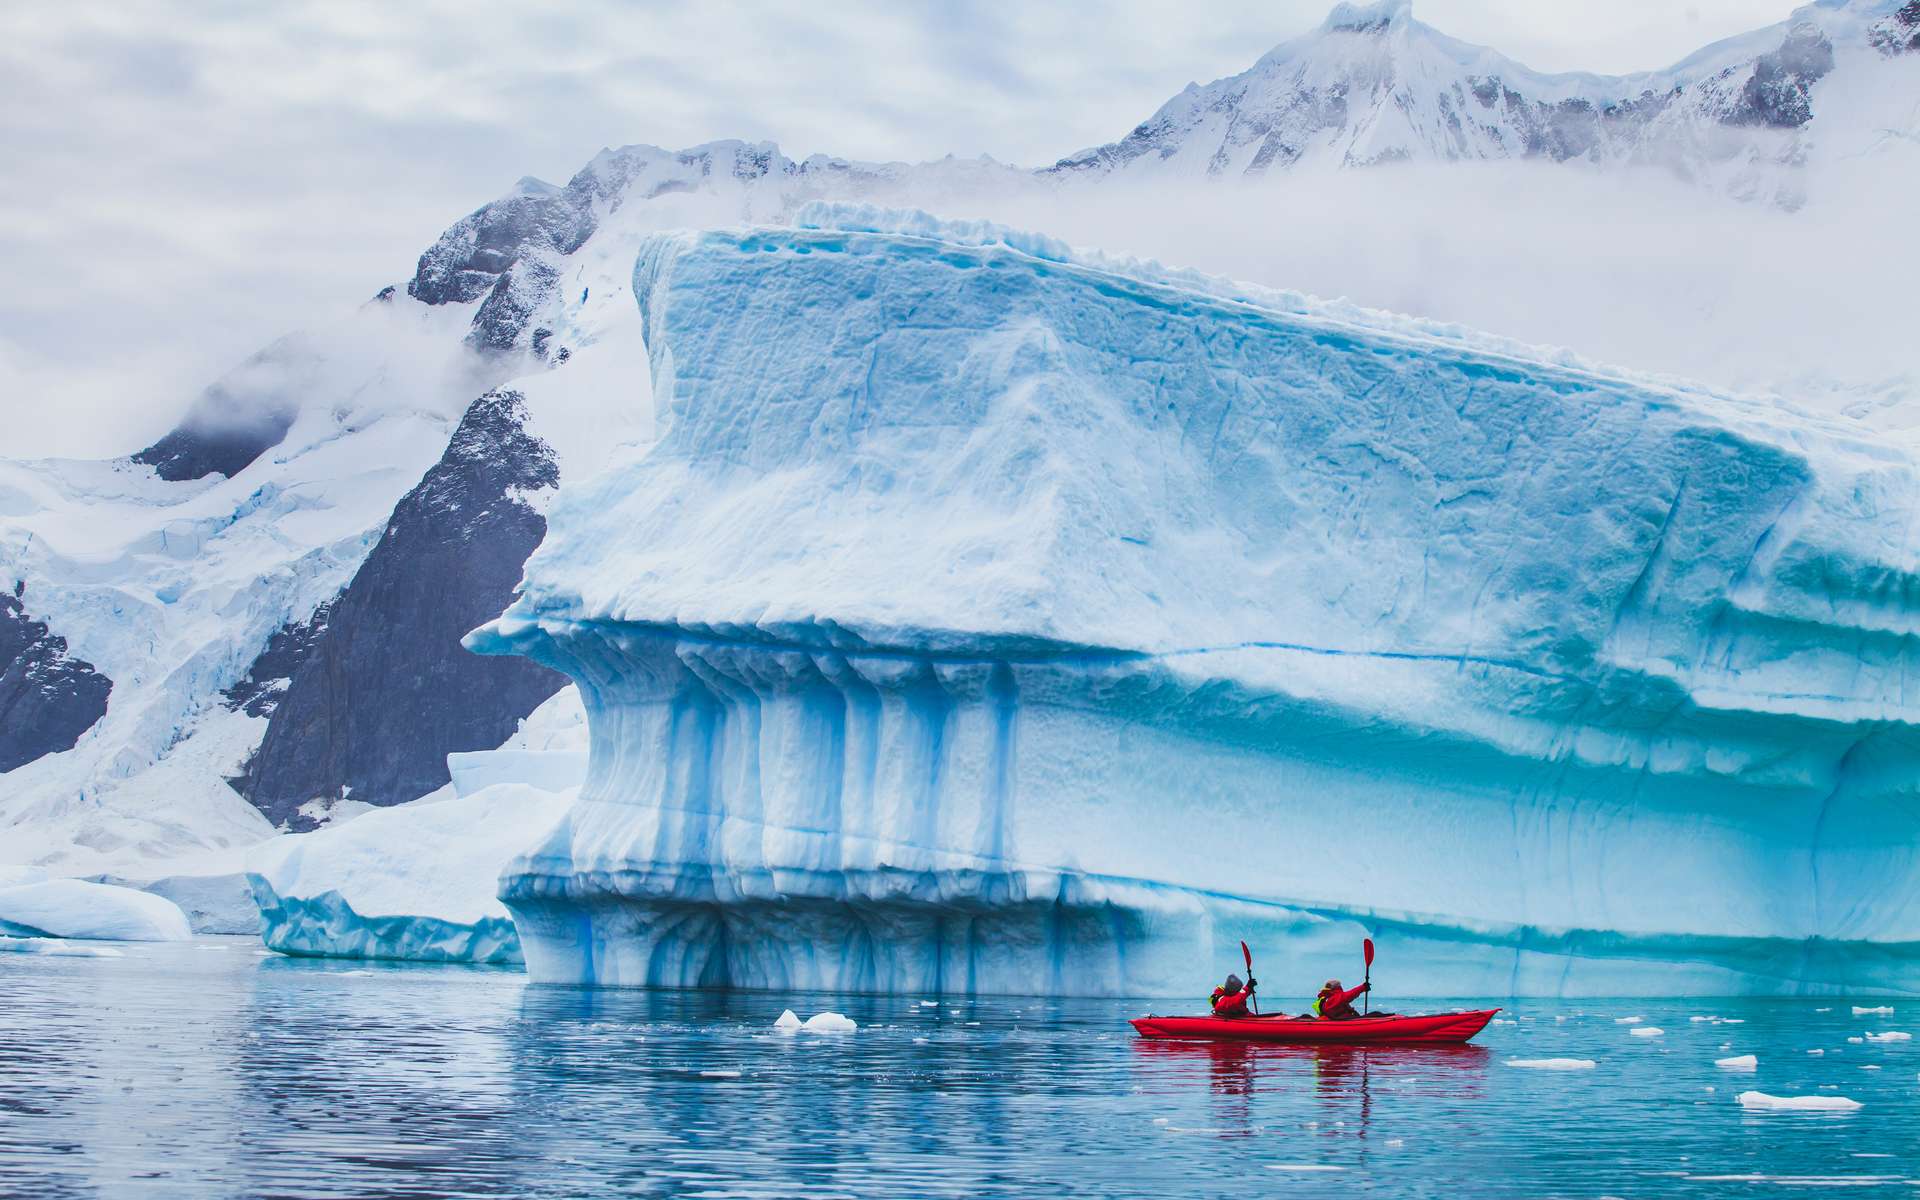 Les événements du Dansgaard-Oeschger se voient notamment dans les carottes de glace du Groenland. © Song_about_summer, Adobe Stock